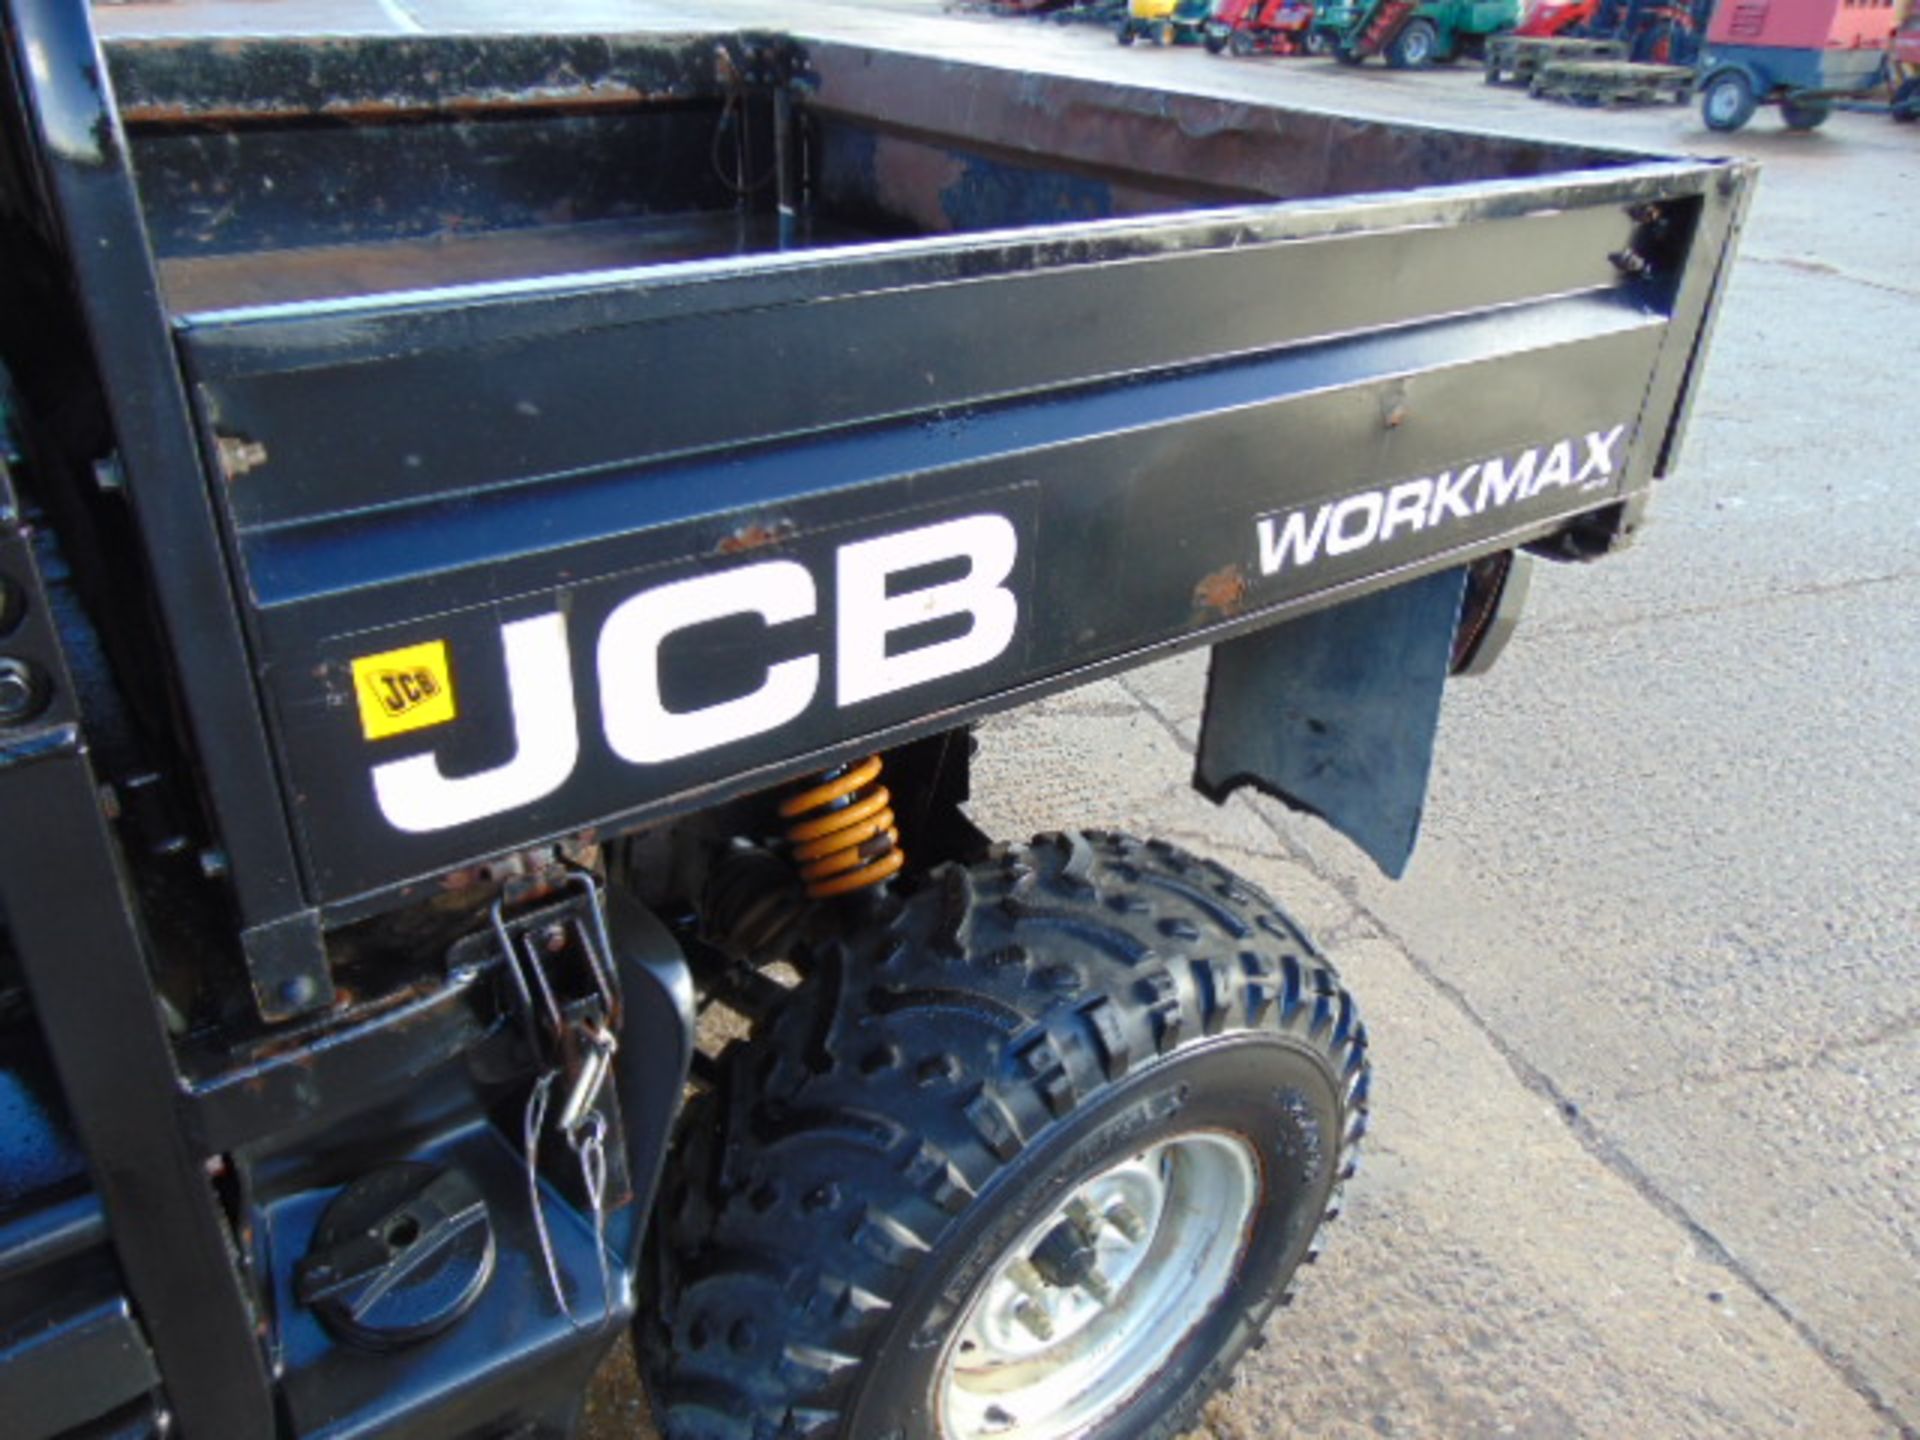 JCB Workmax 800D 4WD Diesel Utility Vehicle UTV - Image 13 of 21